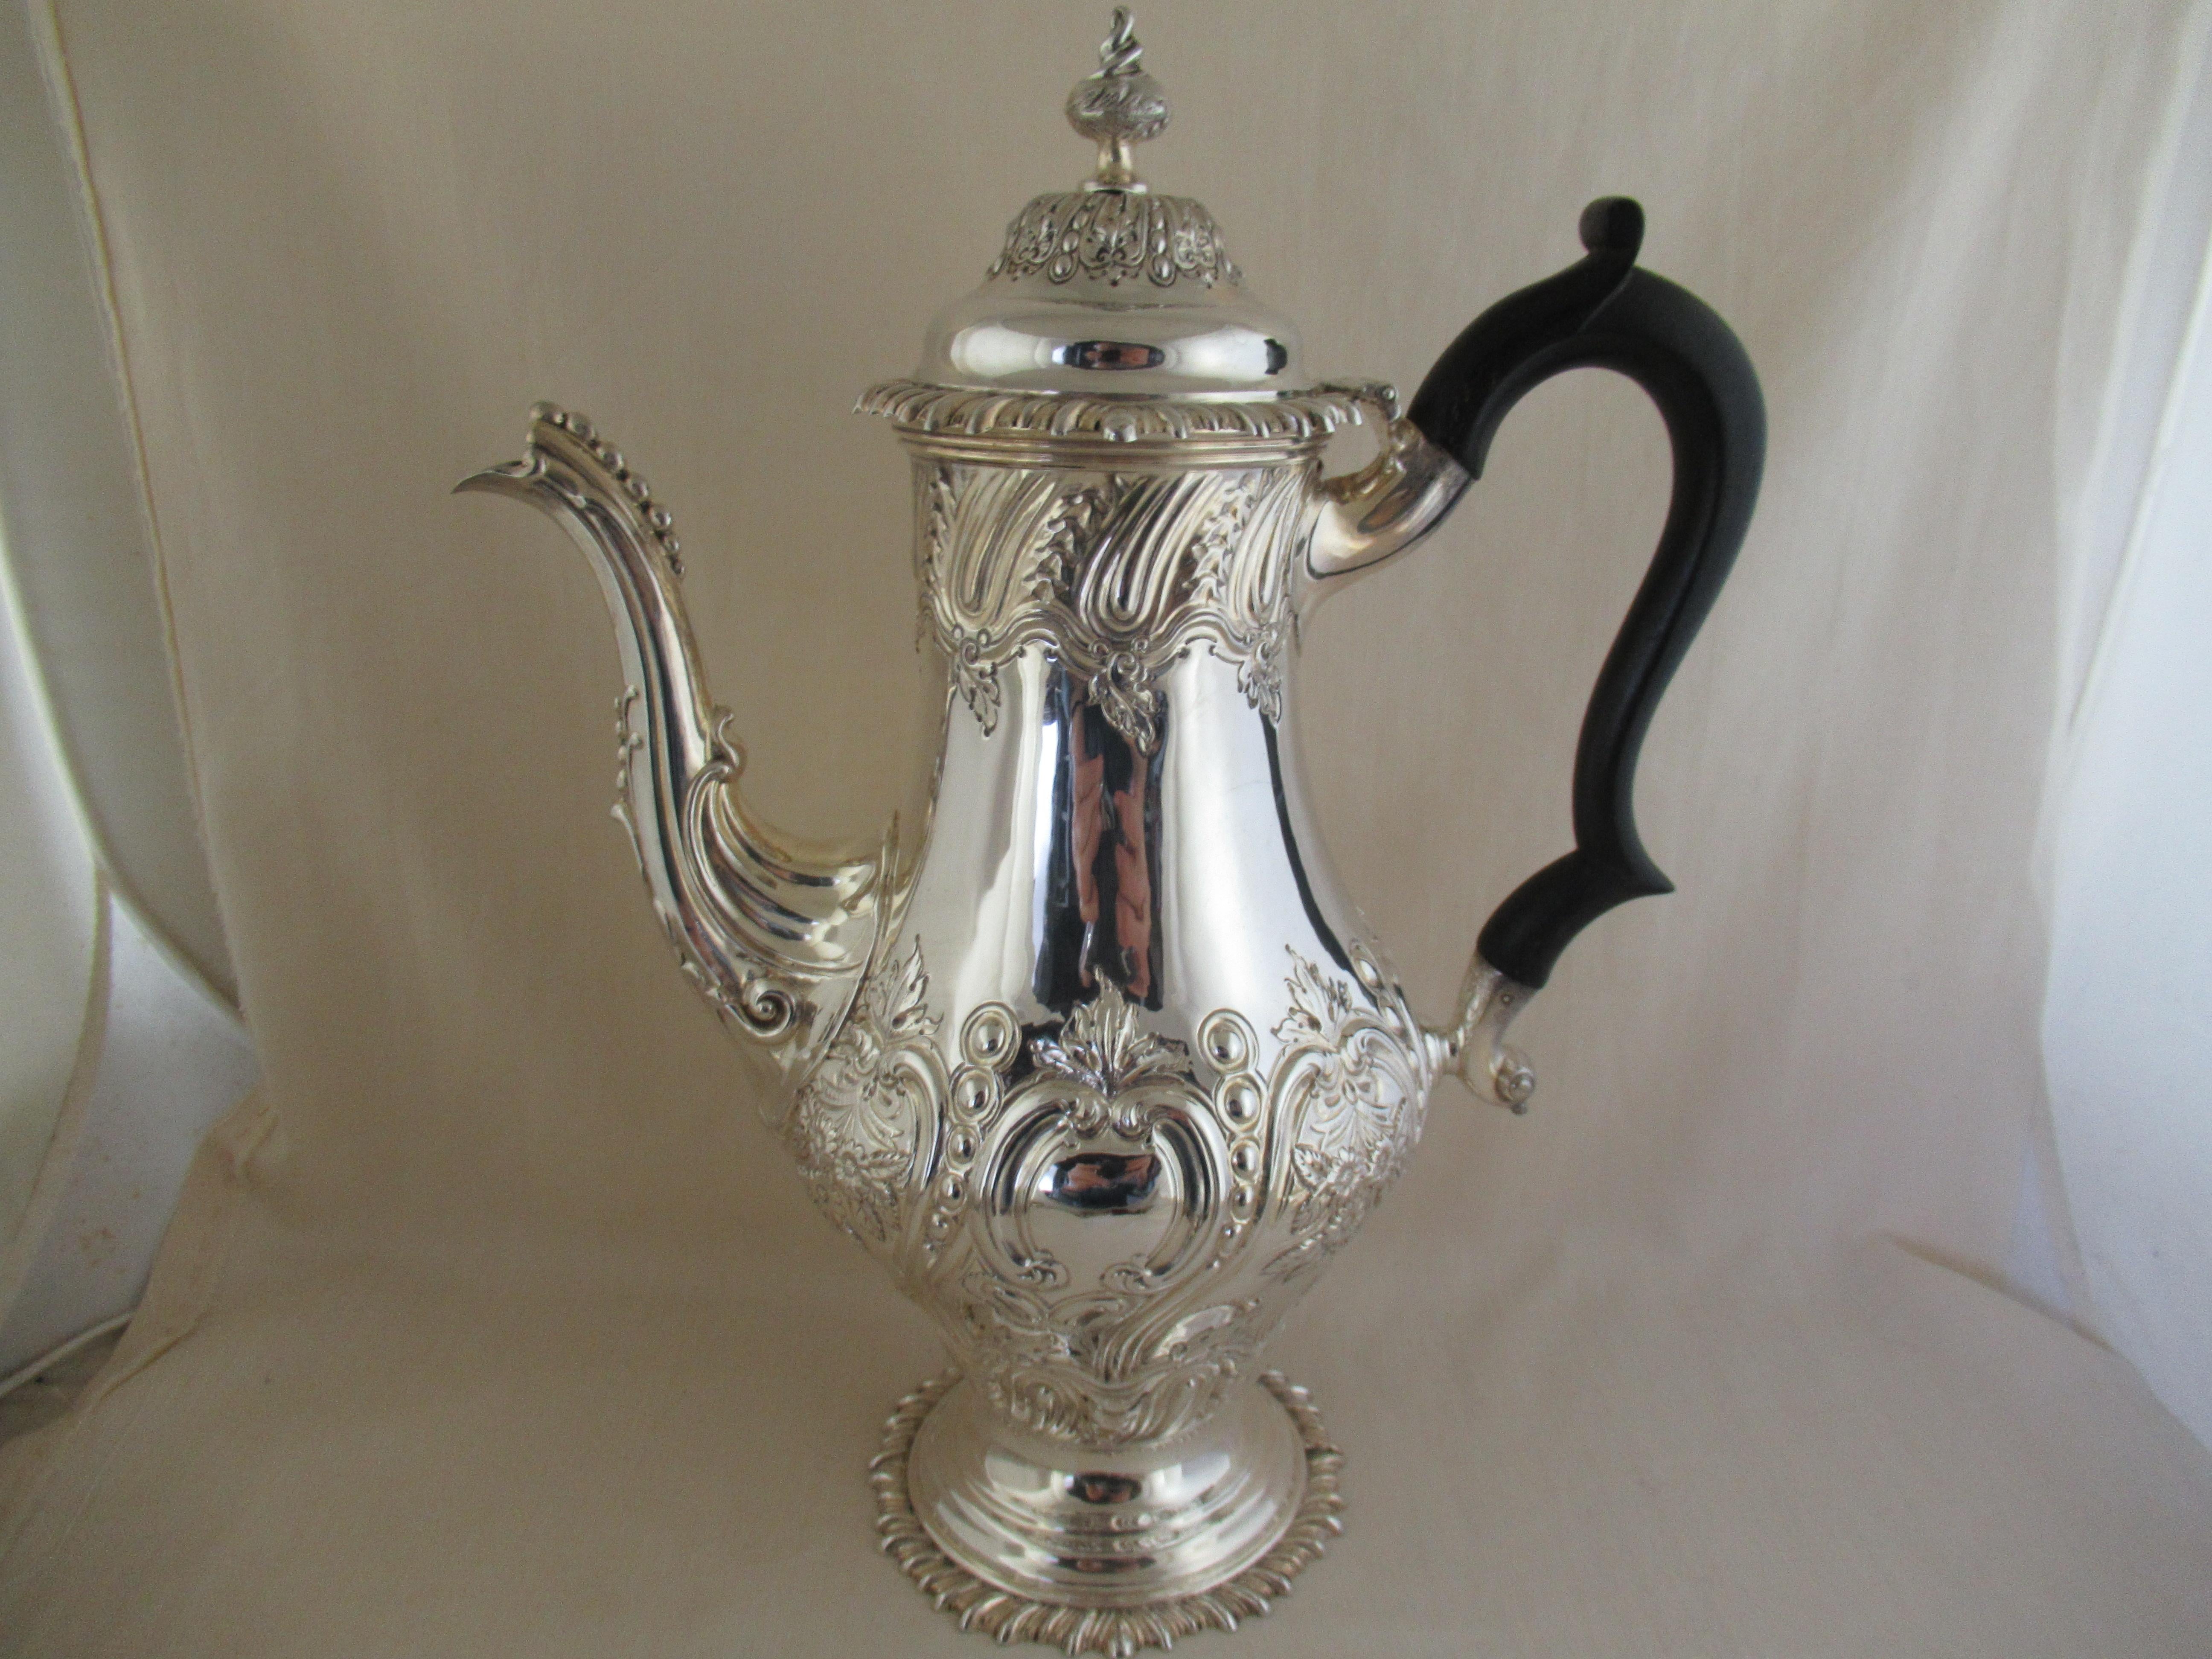 Sterling Silber, großformatige, balusterförmige Kaffeekanne
Hergestellt in London im Jahr 1889 von Joseph & Horace Savory, die als Goldsmiths Alliance firmierten,
 Ihr Ausstellungsraum in der Regent Street, London.
Ein ausgezeichneter Satz von